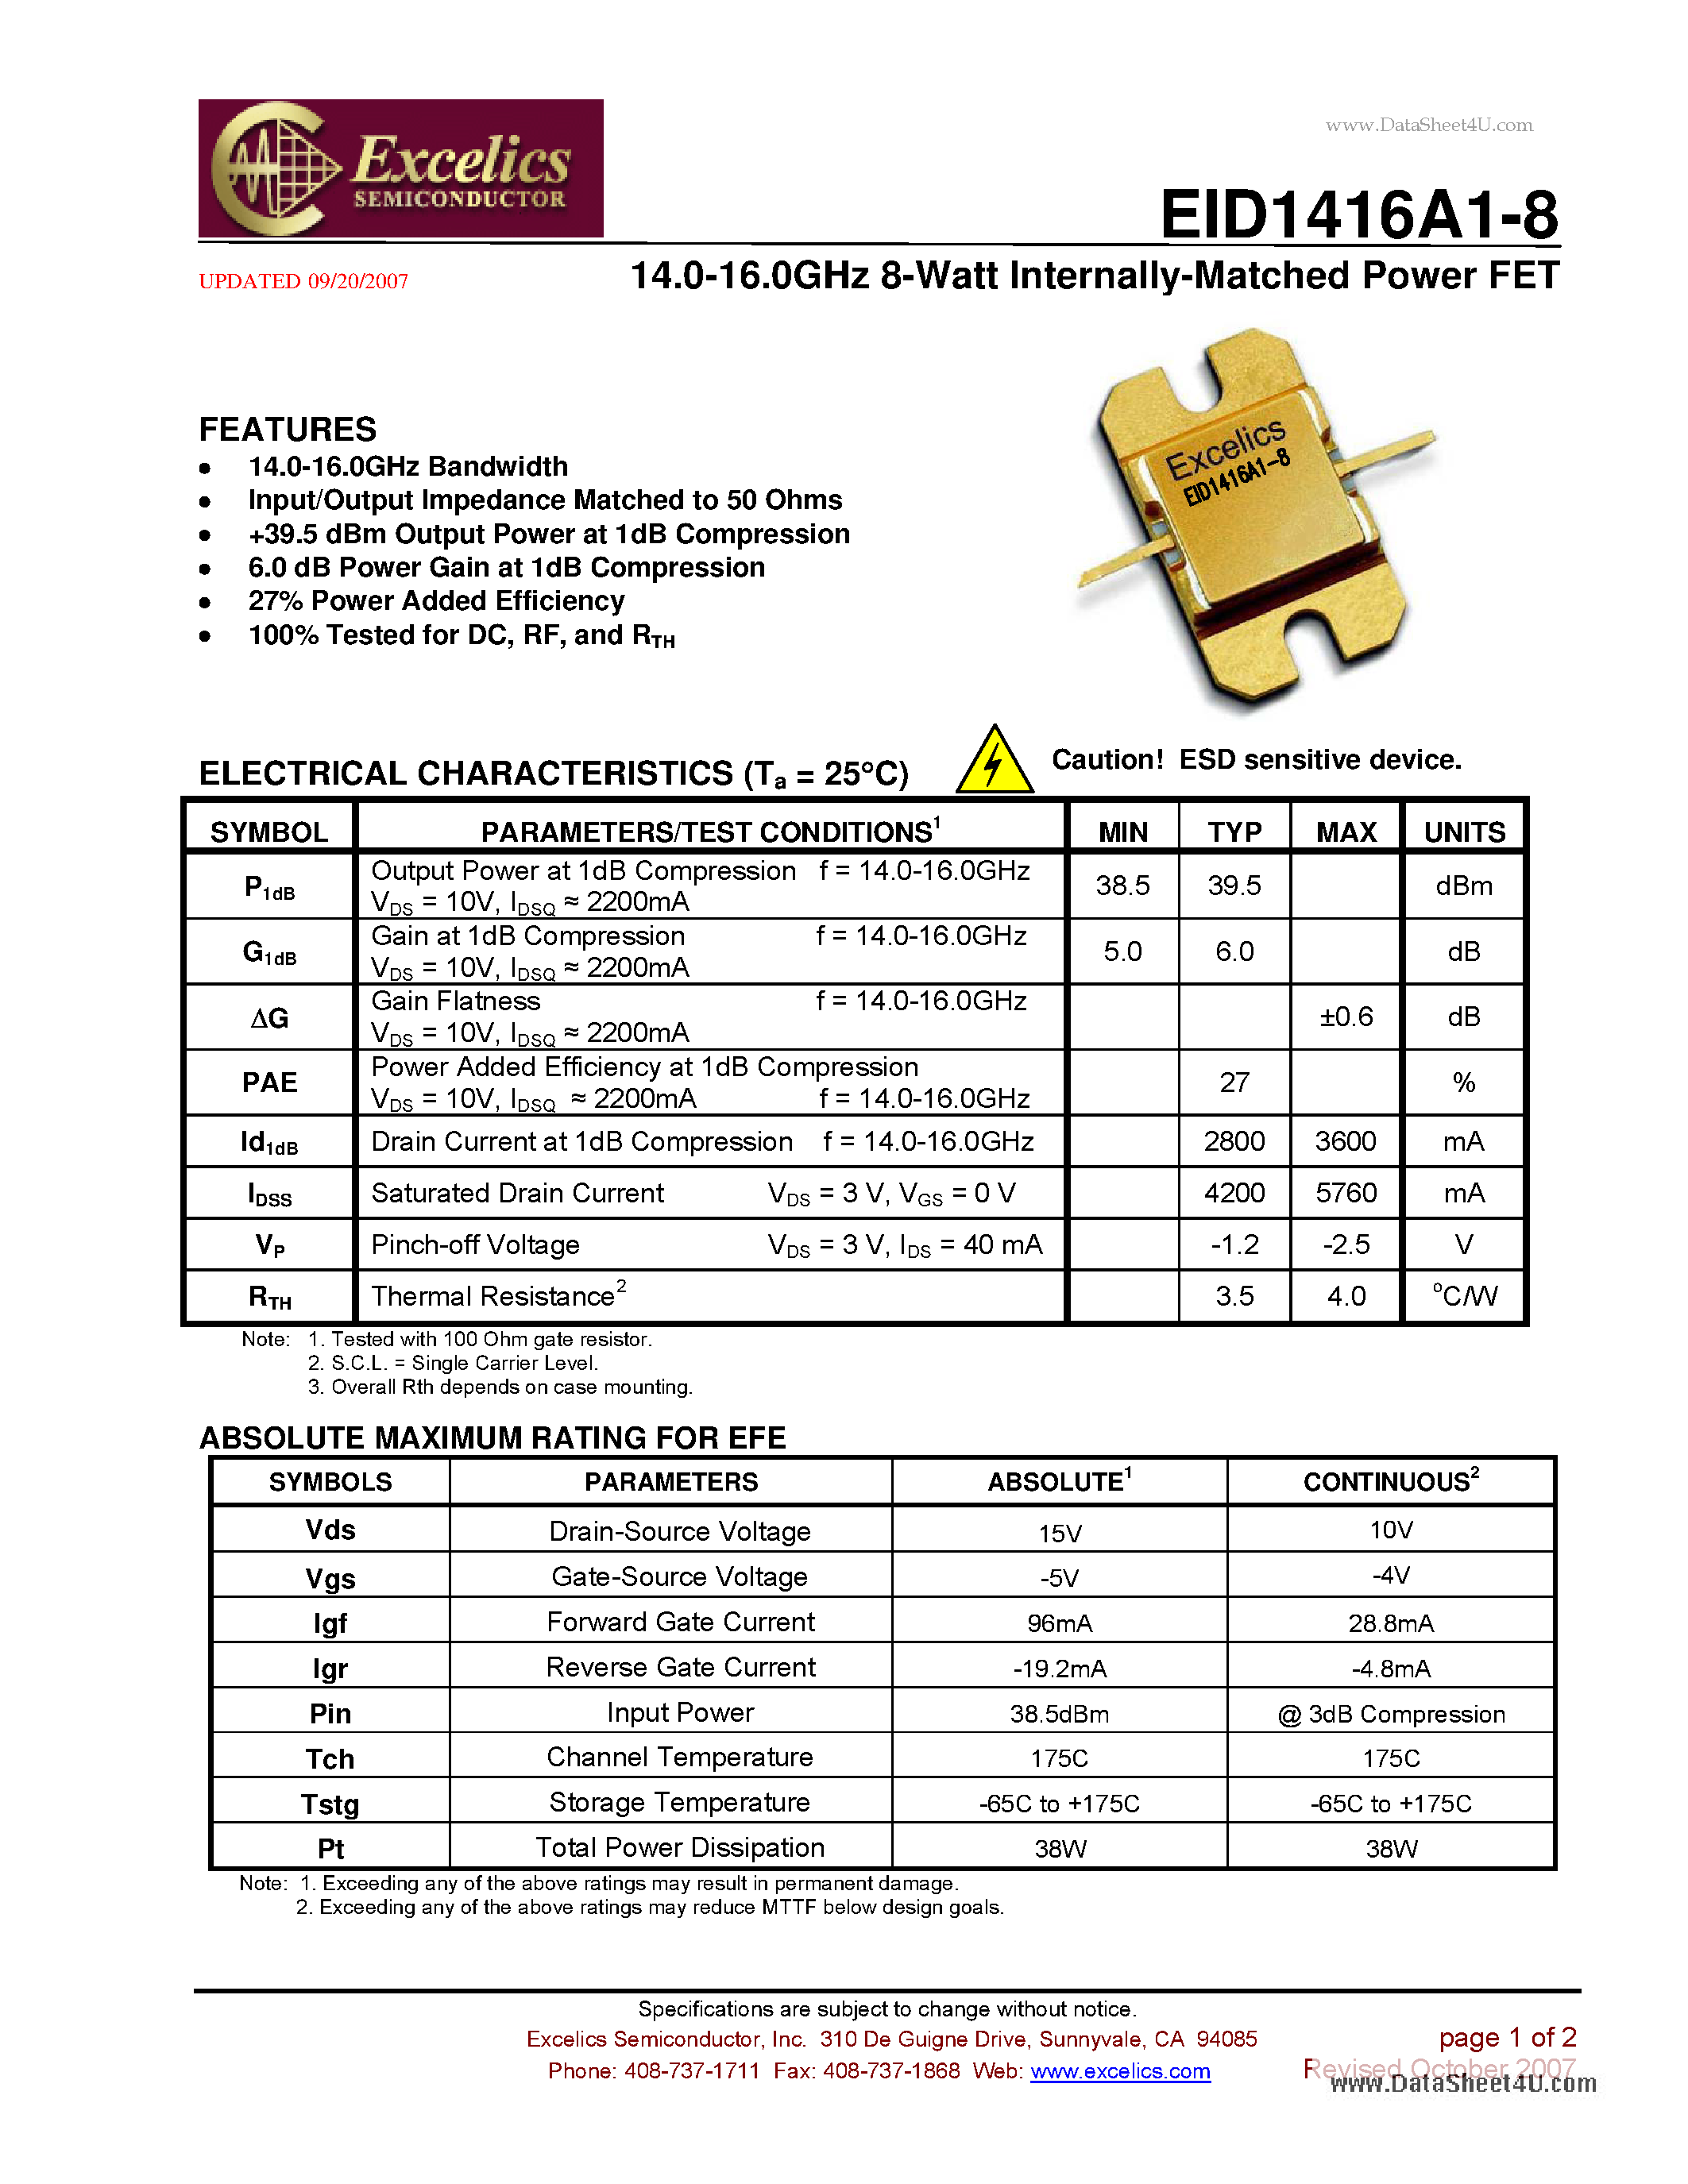 Даташит EID1416A1-8 - 14.0-16.0 GHz 8-Watt Internally-Matched Power FET страница 1